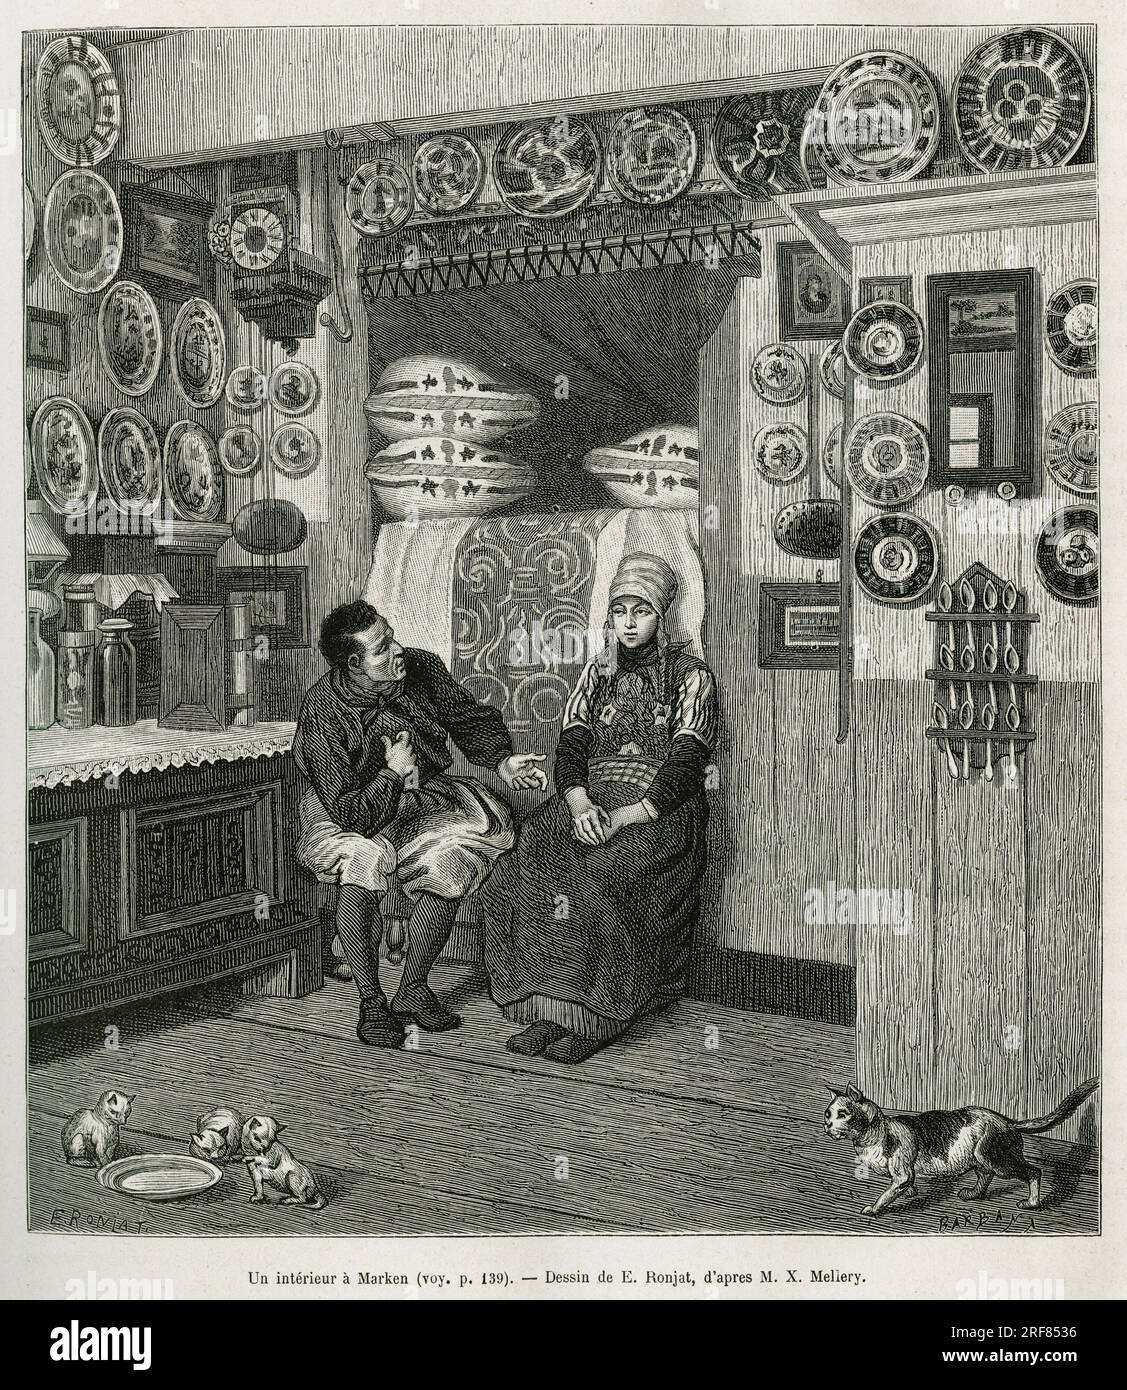 Un interieur a Marken ( Pays Bas), gravure d'apres un dessin de E.Ronjat, pour illustrer le recit la Neerlande, par Charles de Coster, en 1878, publie dans le tour du monde, sous la direction d'Edouard Charton, 1880, Paris. Stock Photo